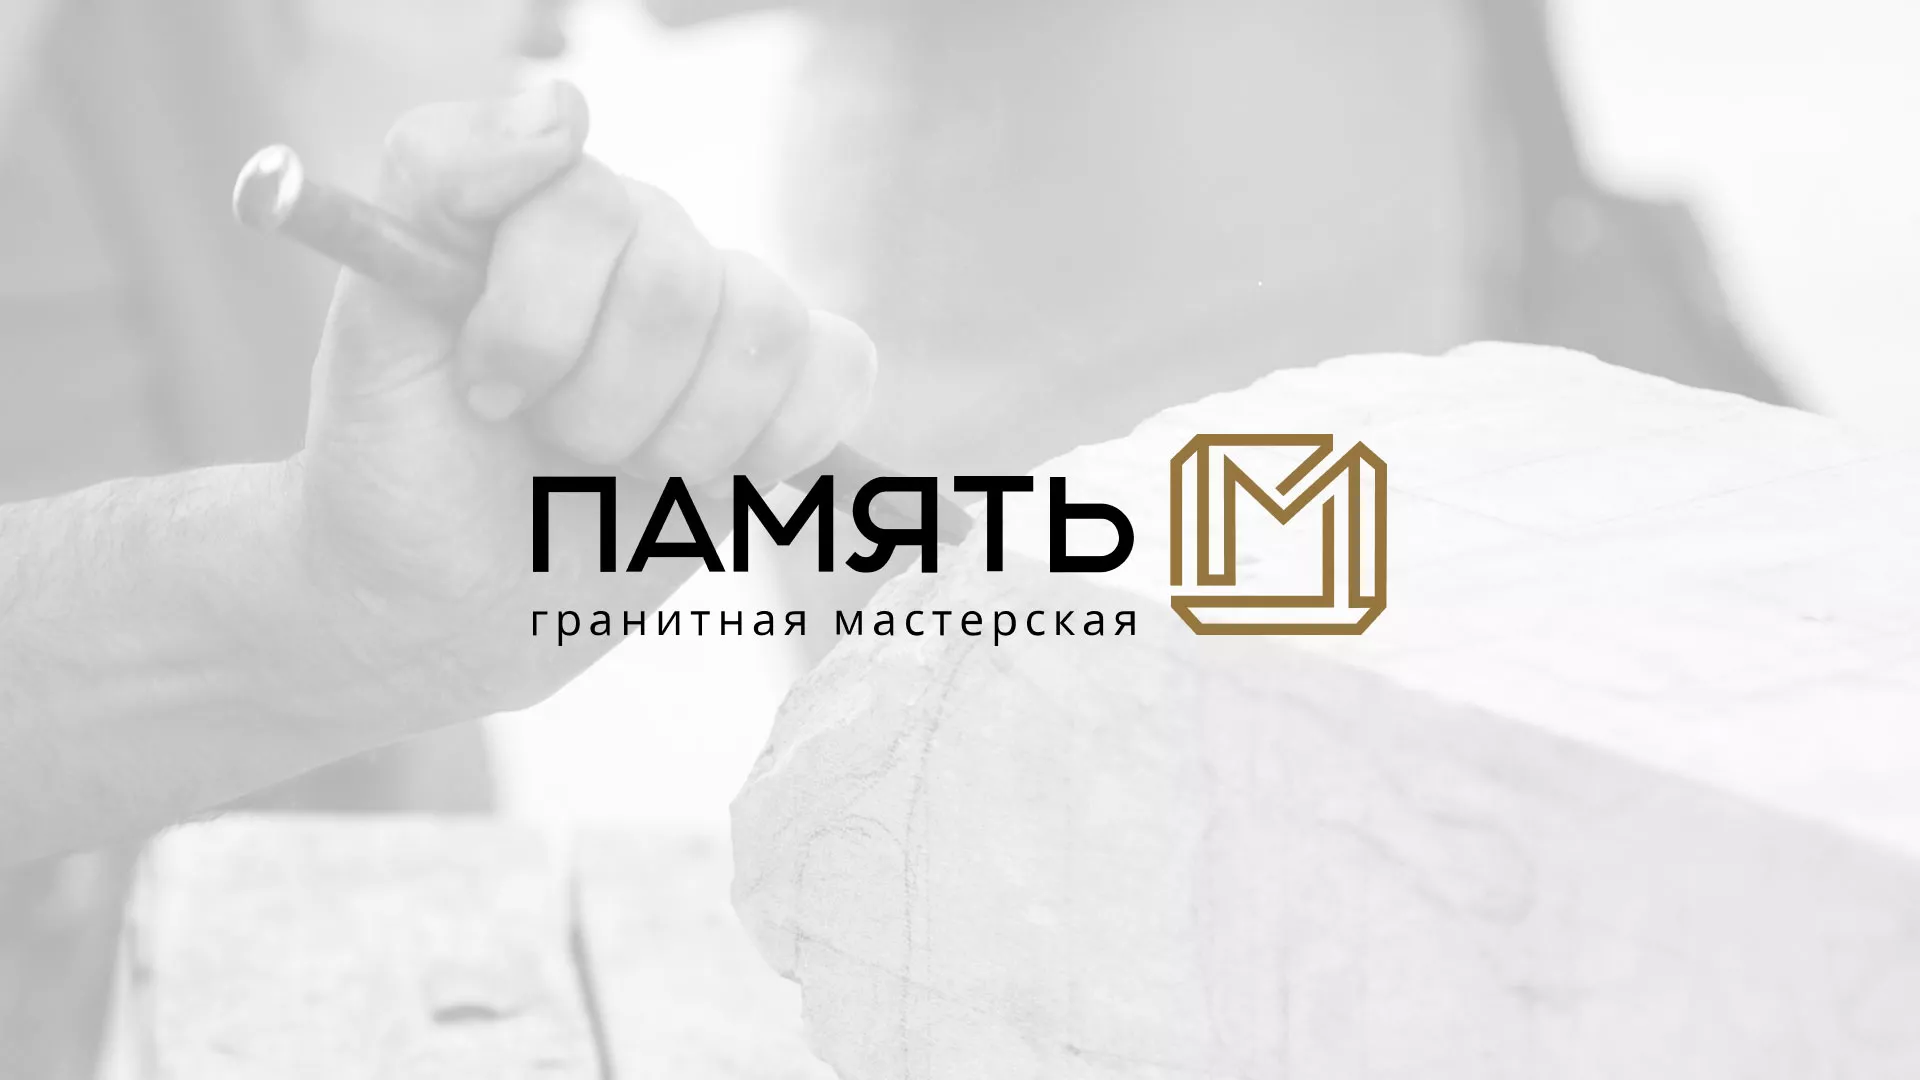 Разработка логотипа и сайта компании «Память-М» в Макарове